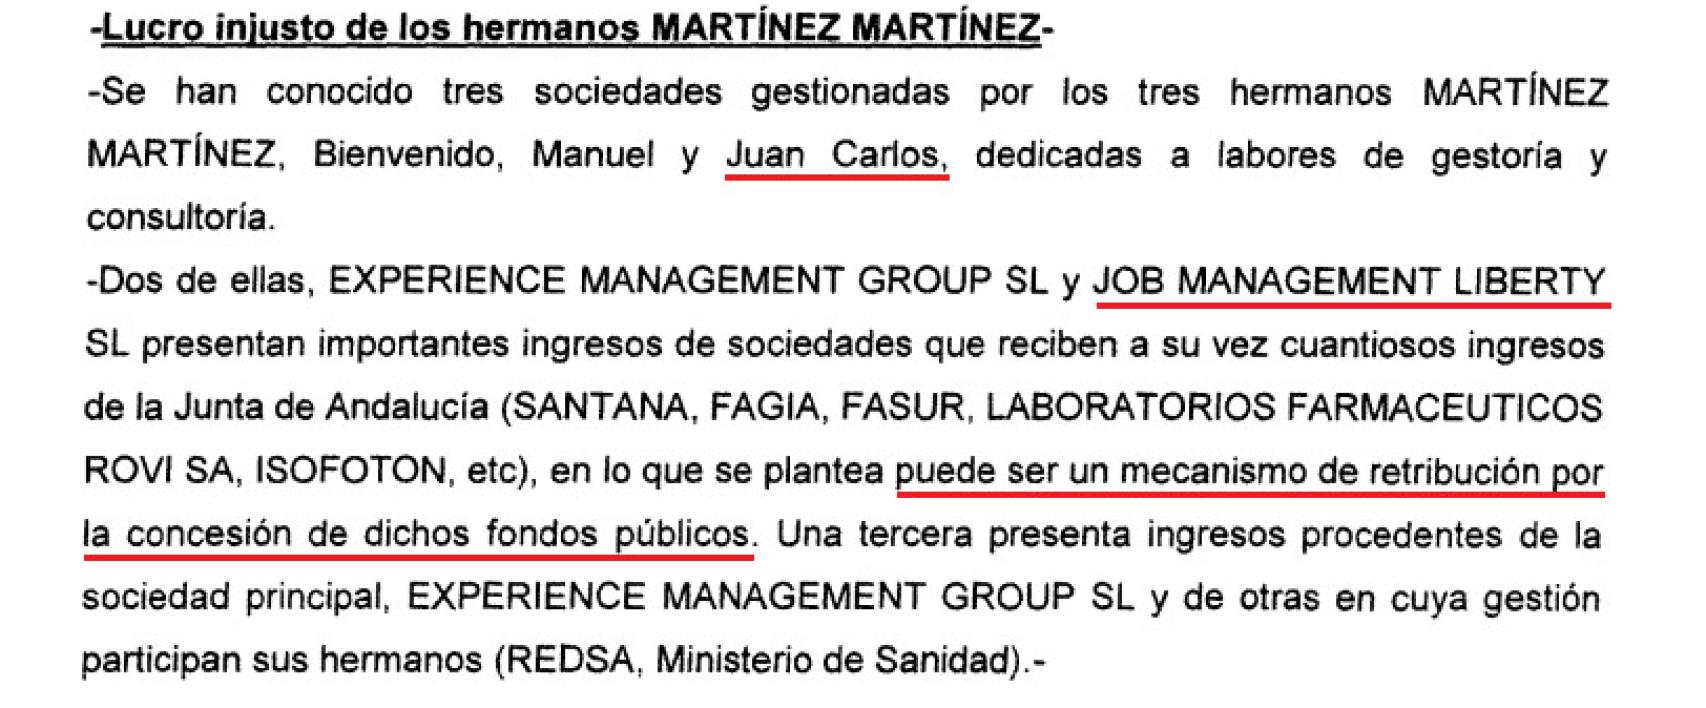 Fragmento del informe policial que señala el lucro injusto de los hermanos Martínez.